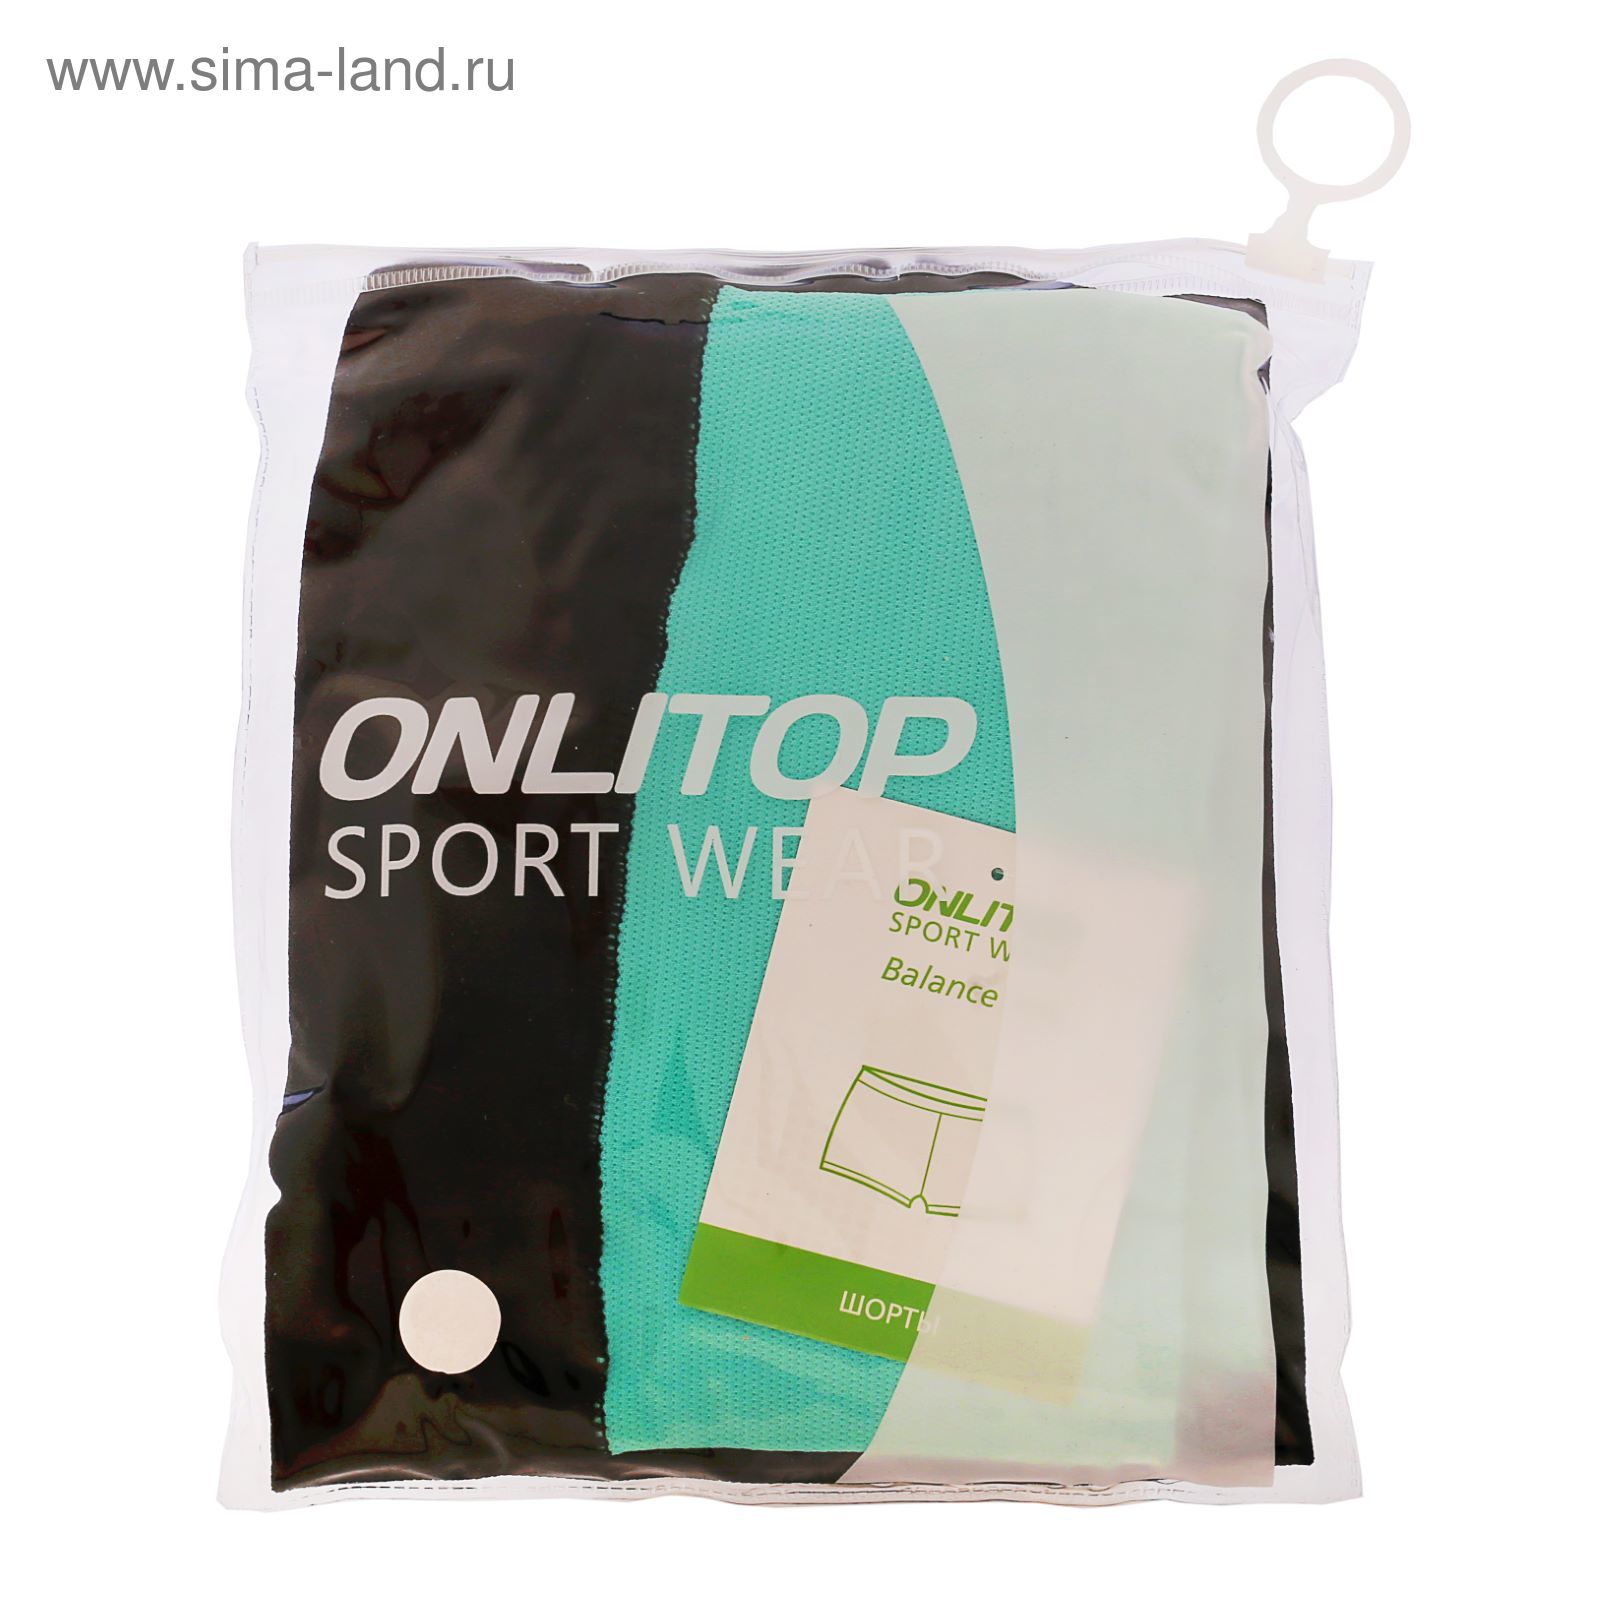 Спортивные шорты ONLITOP Balance mint, размер S-M (42-44)